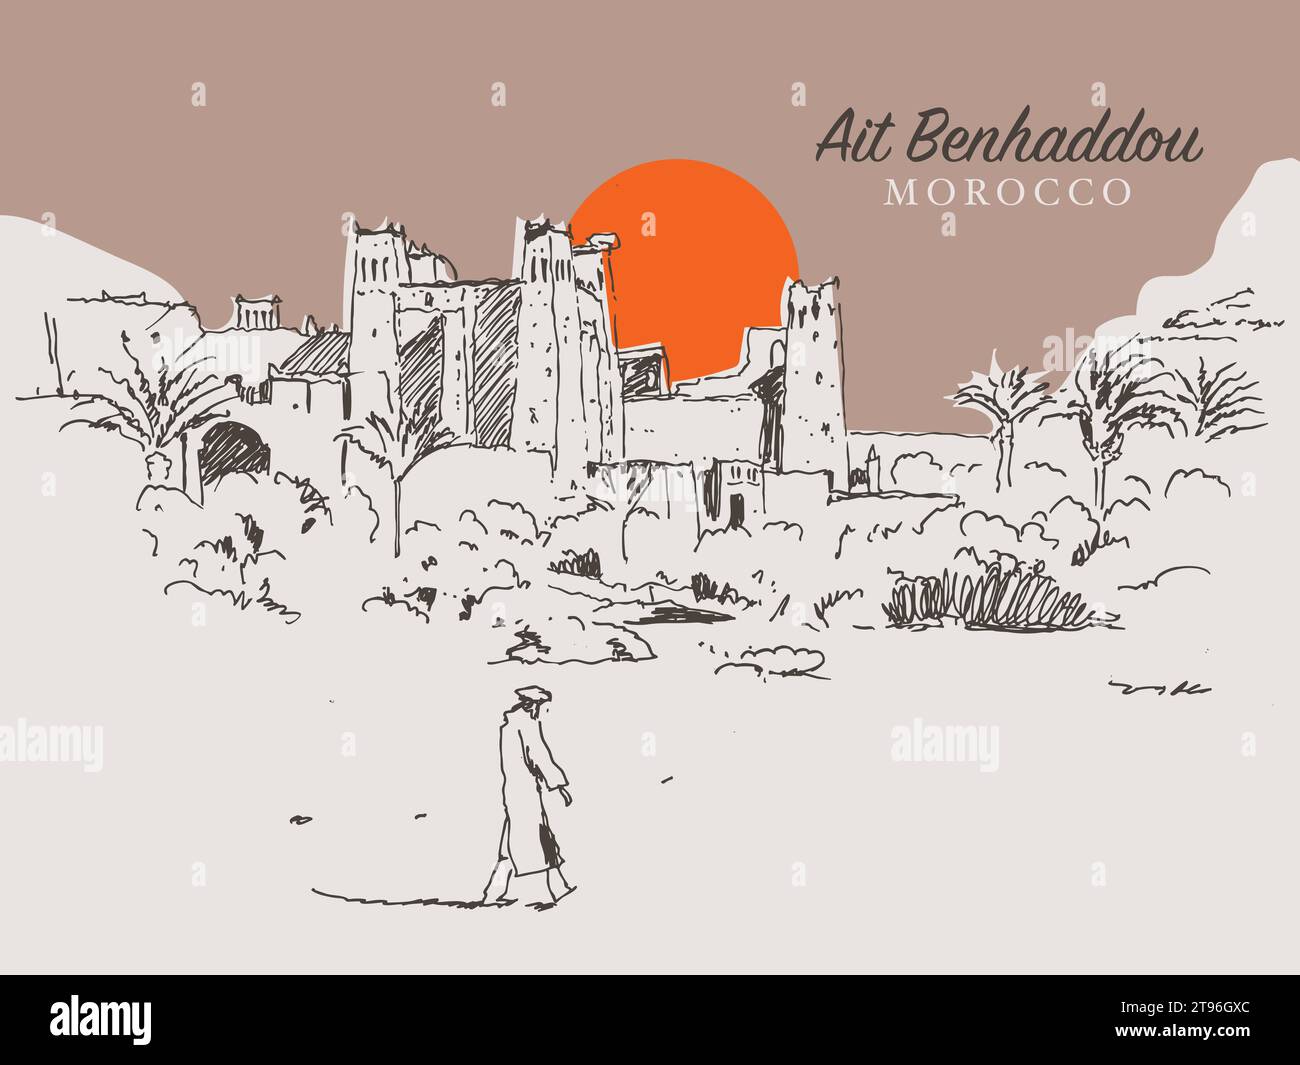 Illustrazione di uno schizzo vettoriale disegnato a mano di Ait Benhaddou, un villaggio fortificato lungo l'ex rotta carovana tra il Sahara e Marrakech in Marocco Illustrazione Vettoriale